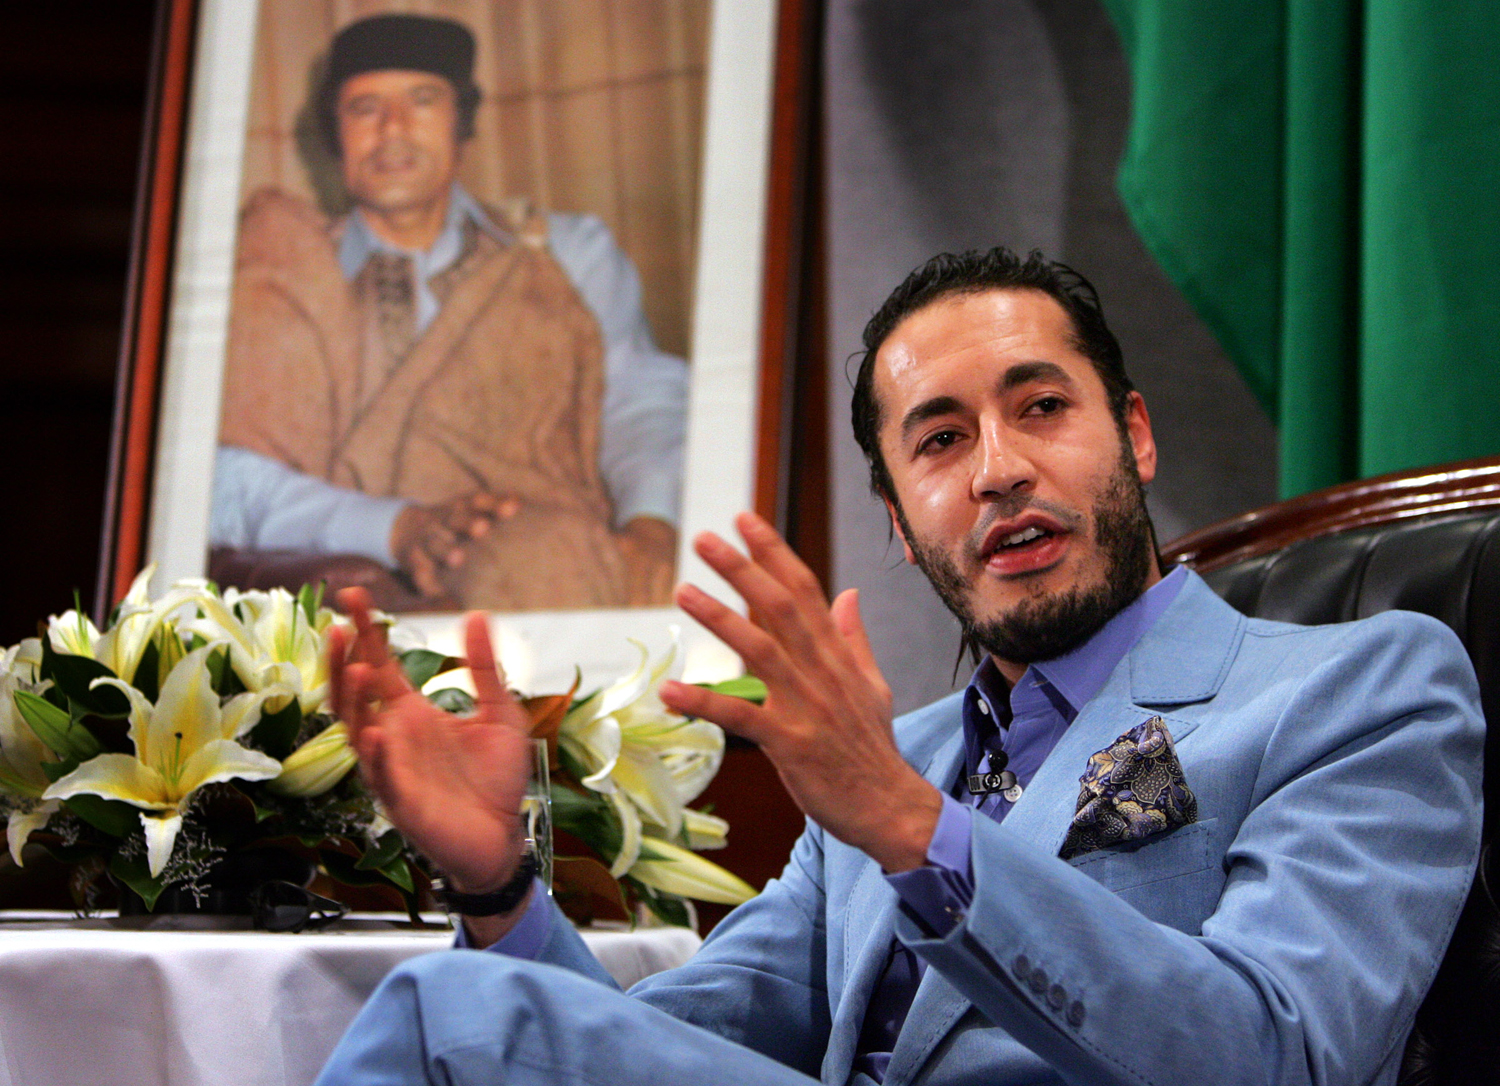 Λιβύη - Αποφυλακίστηκε ο γιος του Καντάφι, Σαάντι και «έφυγε για την Τουρκία»